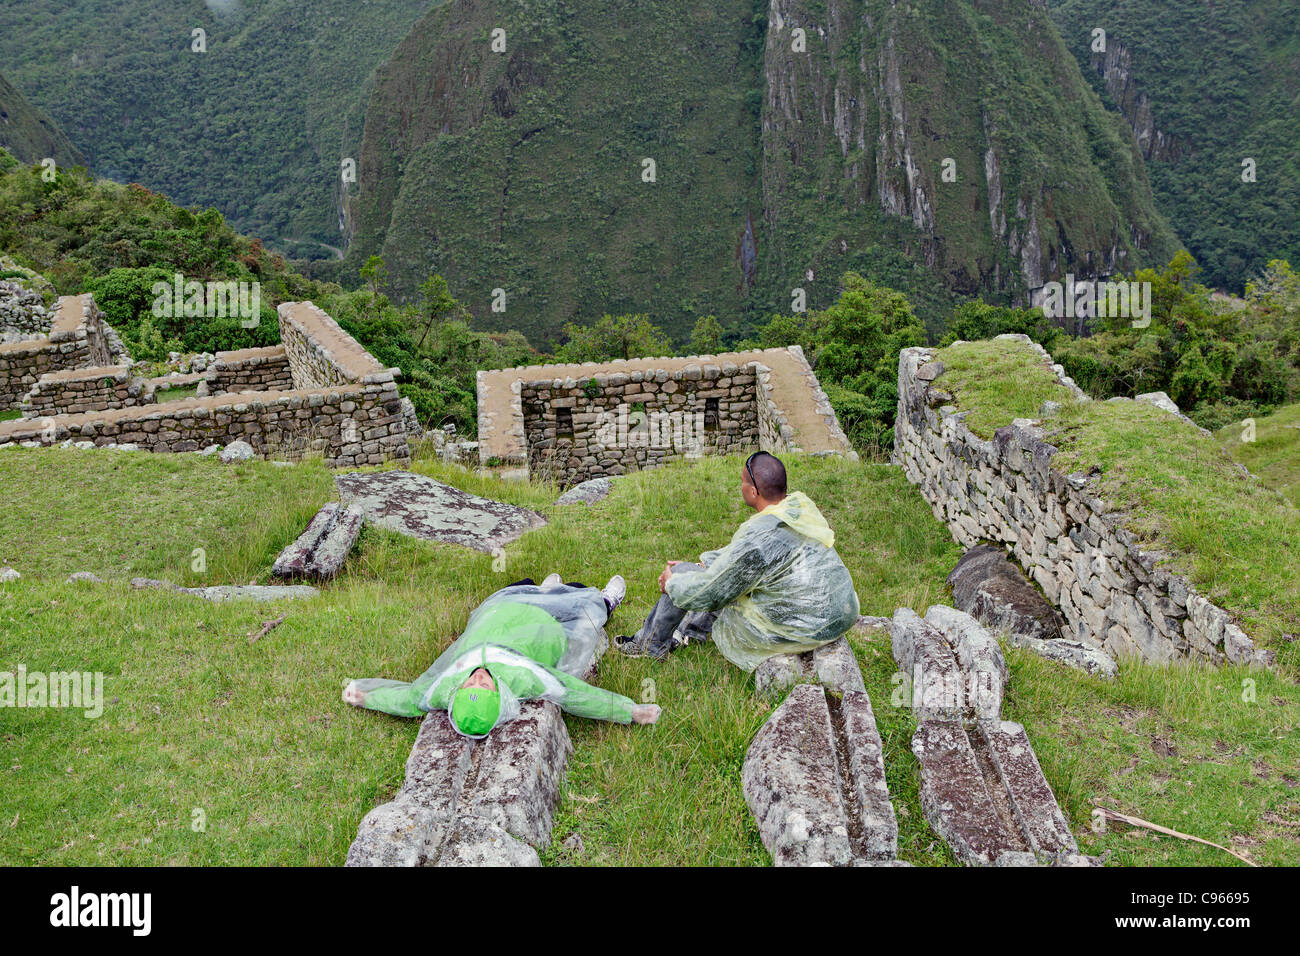 Les touristes à l'ancienne ruines Incas de Machu Picchu, site touristique le plus connu dans la région de montagnes des Andes, au Pérou. Banque D'Images